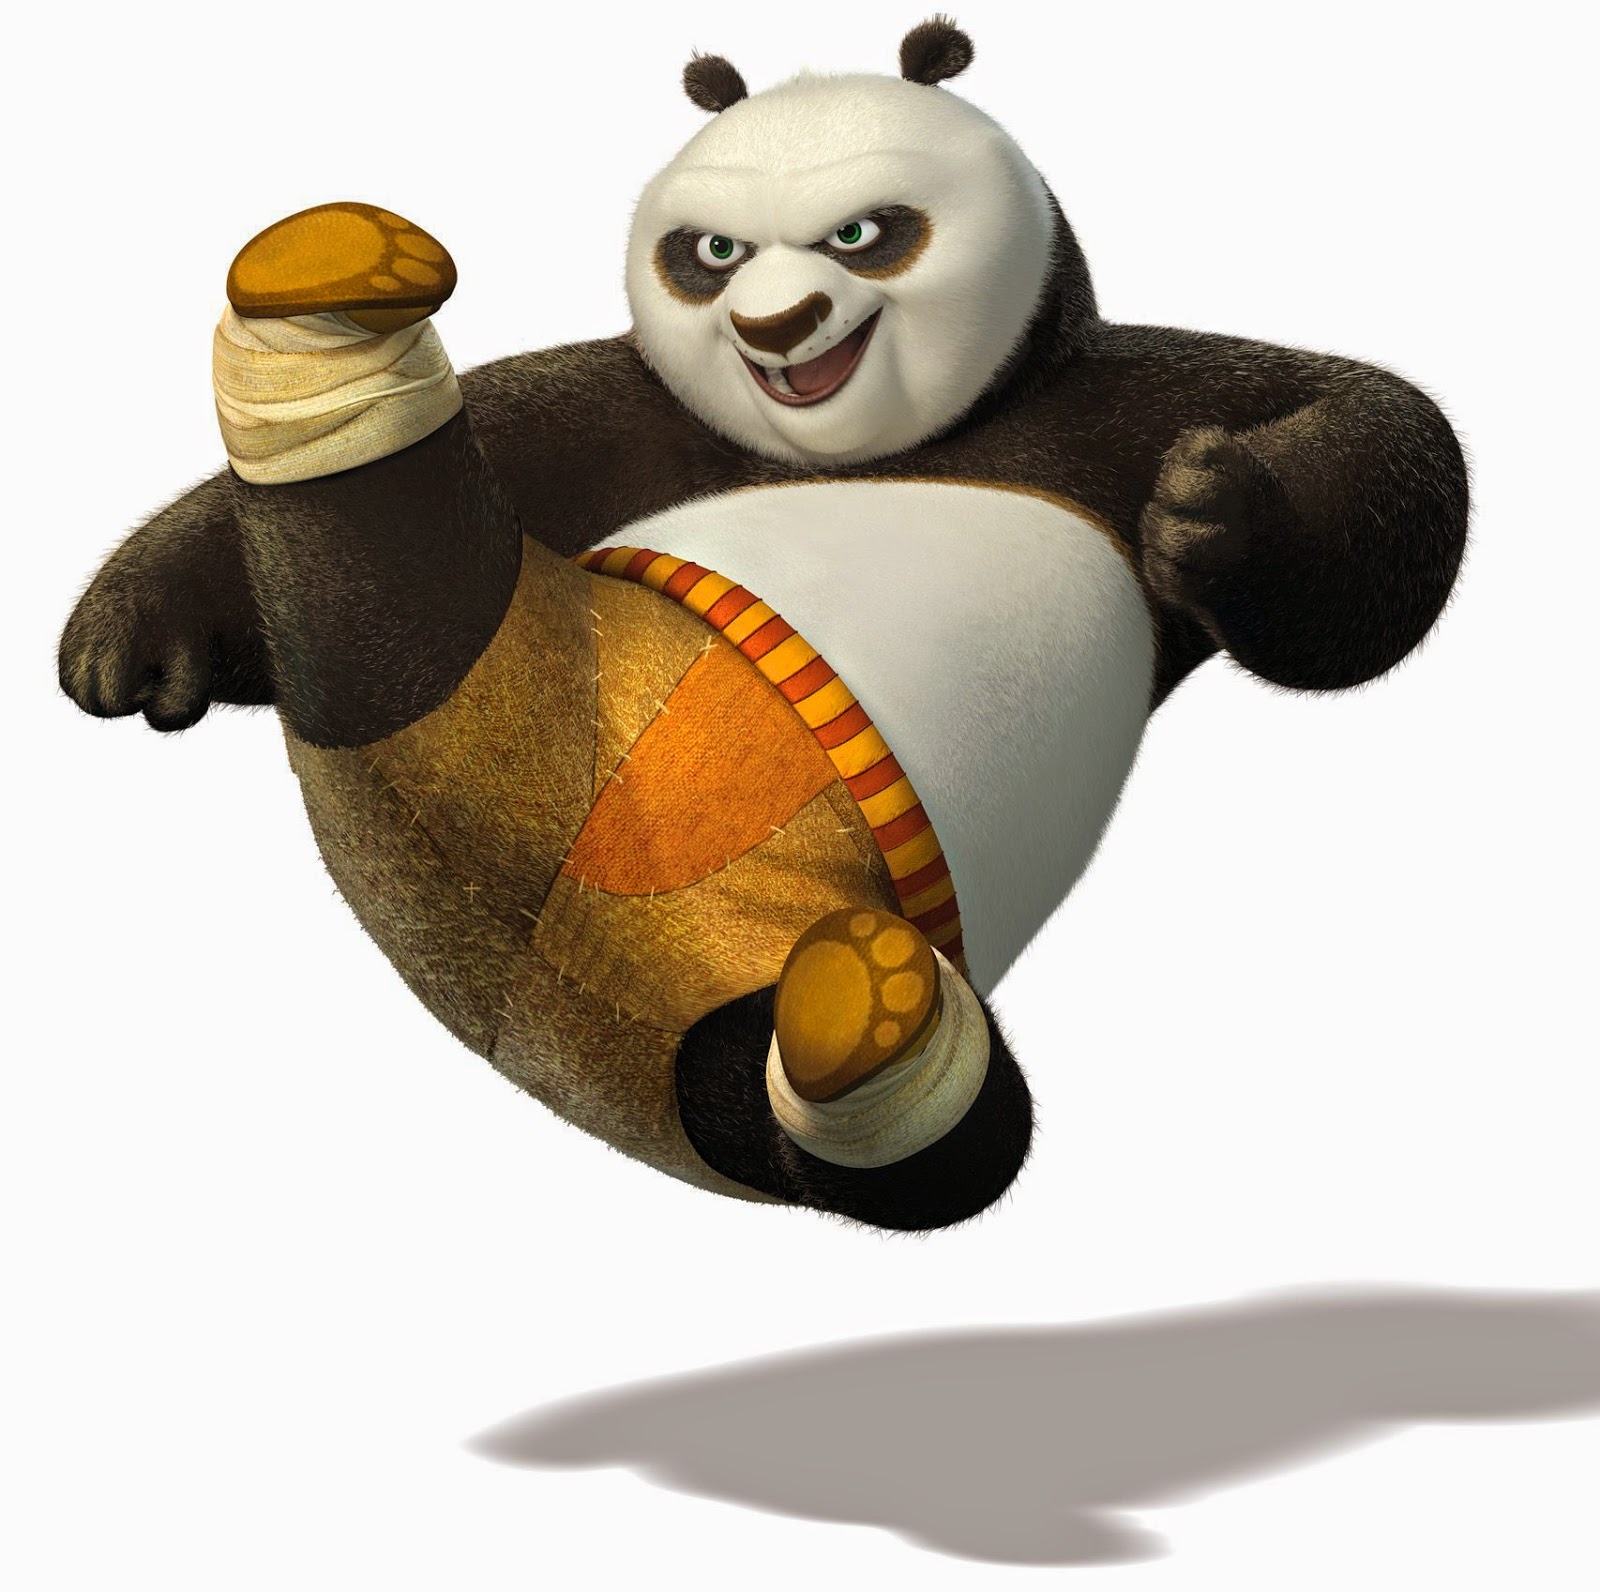 Kumpulan Gambar Kung Fu Panda | Gambar Lucu Terbaru Cartoon Animation ...